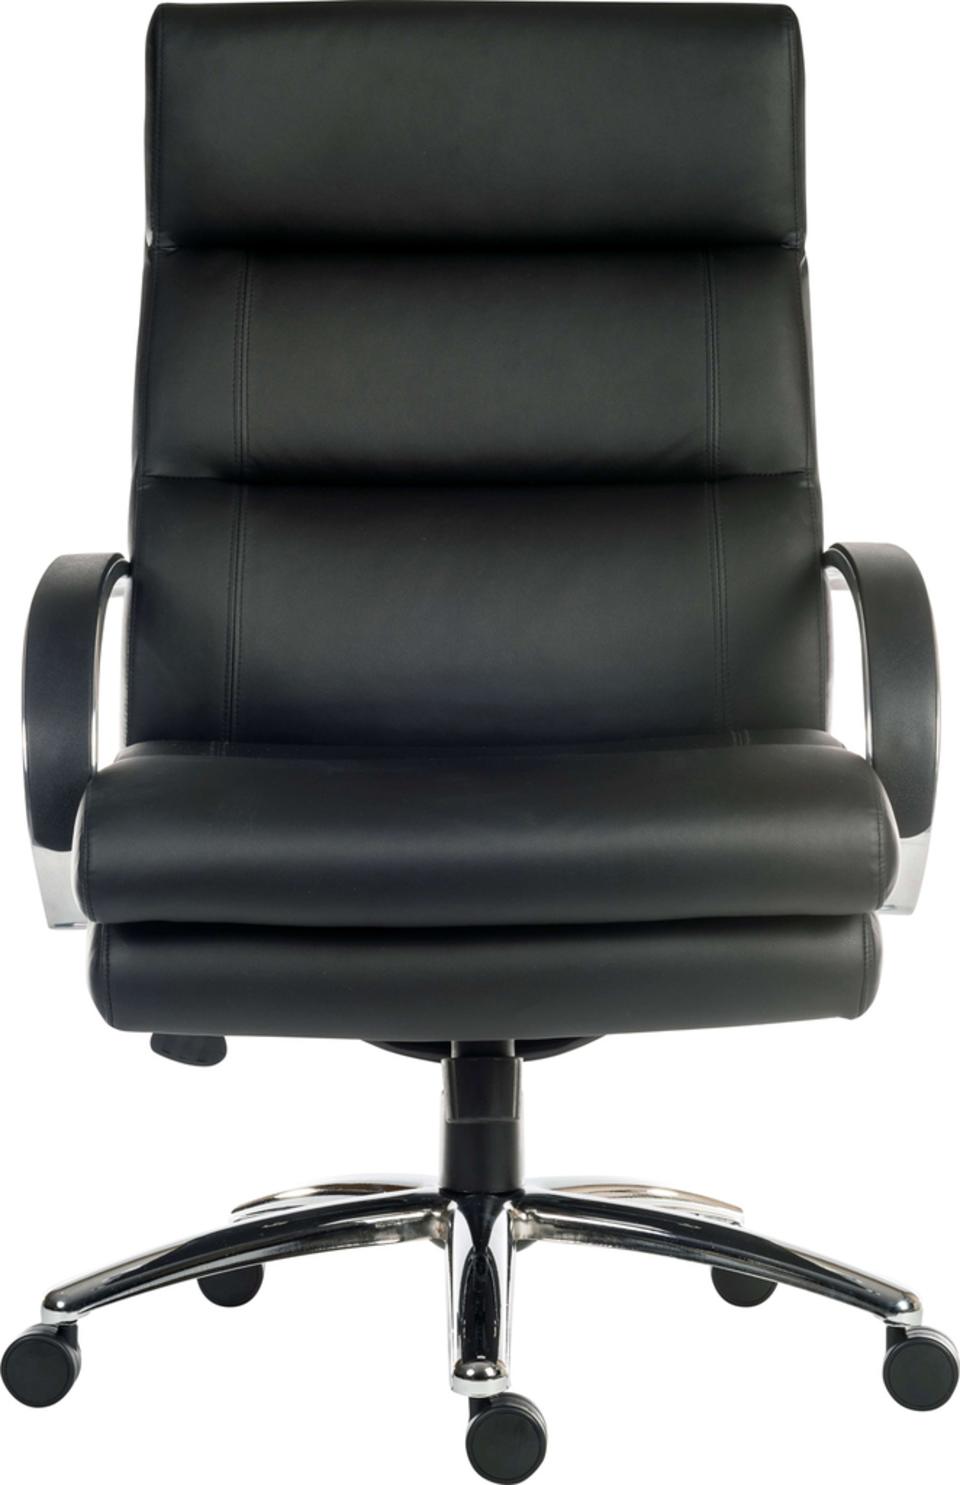 Samson Heavy Duty Leather Executive Chair